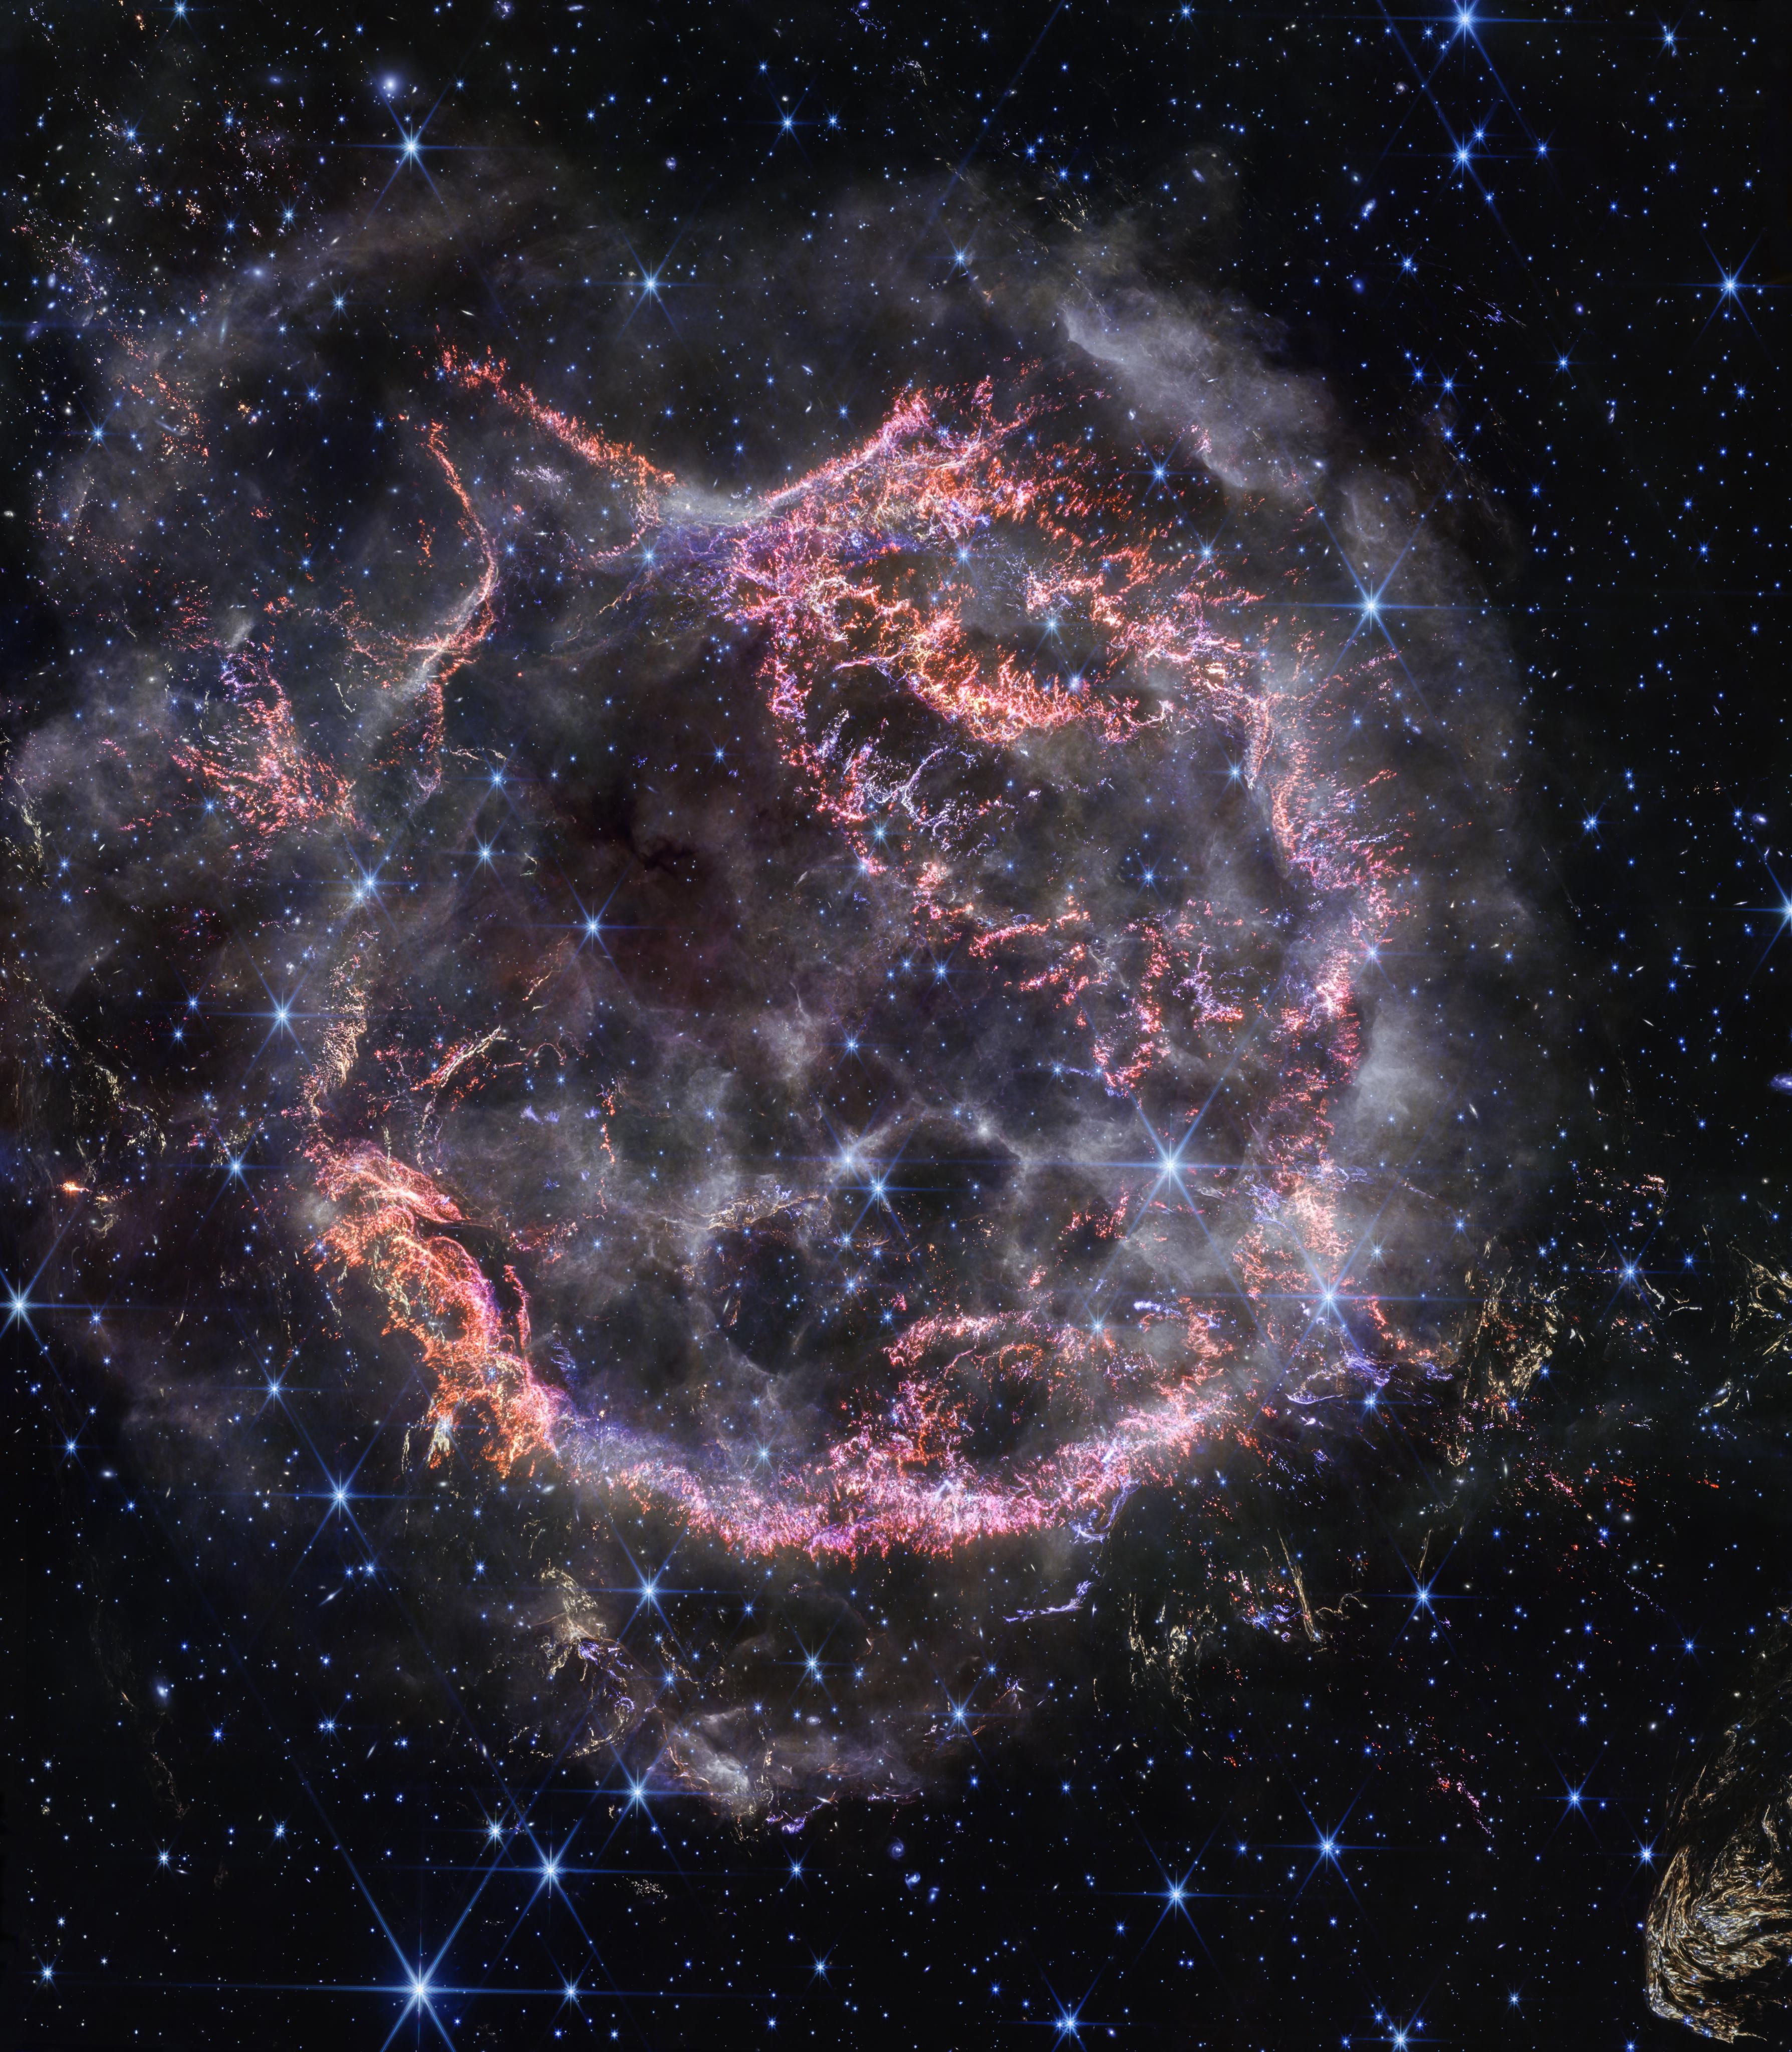 هيكل من الخيوط التي تظهر كدائرة متوسّعة بألوان محمرّة قاسية بمعظمها، يحيط بها ويتخلّلها أغبرة دخانيّة بيضاء، في حين تظهر نجوم كبيرة ذات أشواك سداسية وأخرى نقطيّة